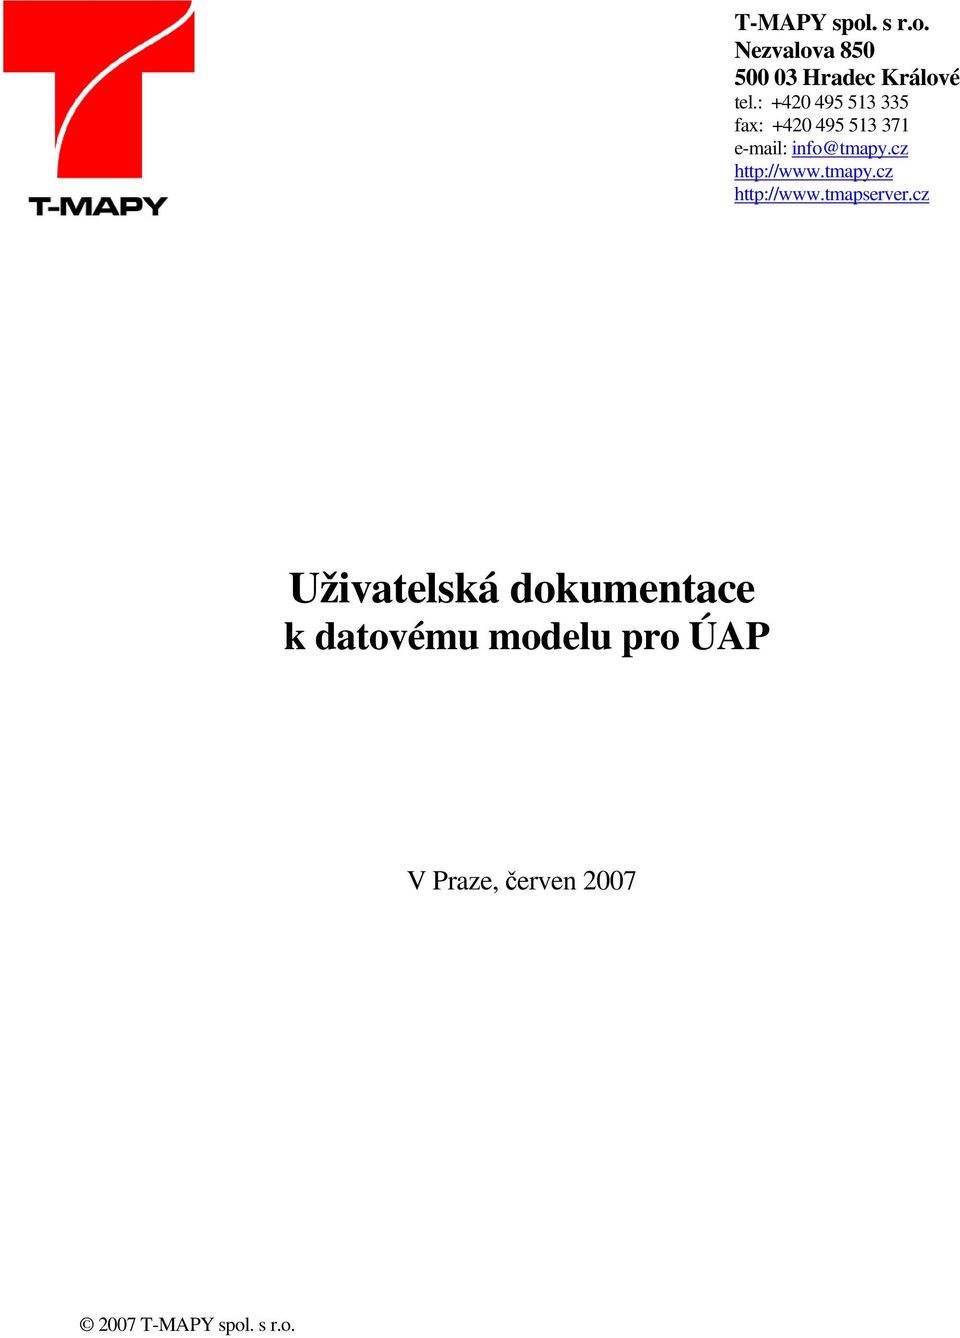 cz http://www.tmapy.cz http://www.tmapserver.